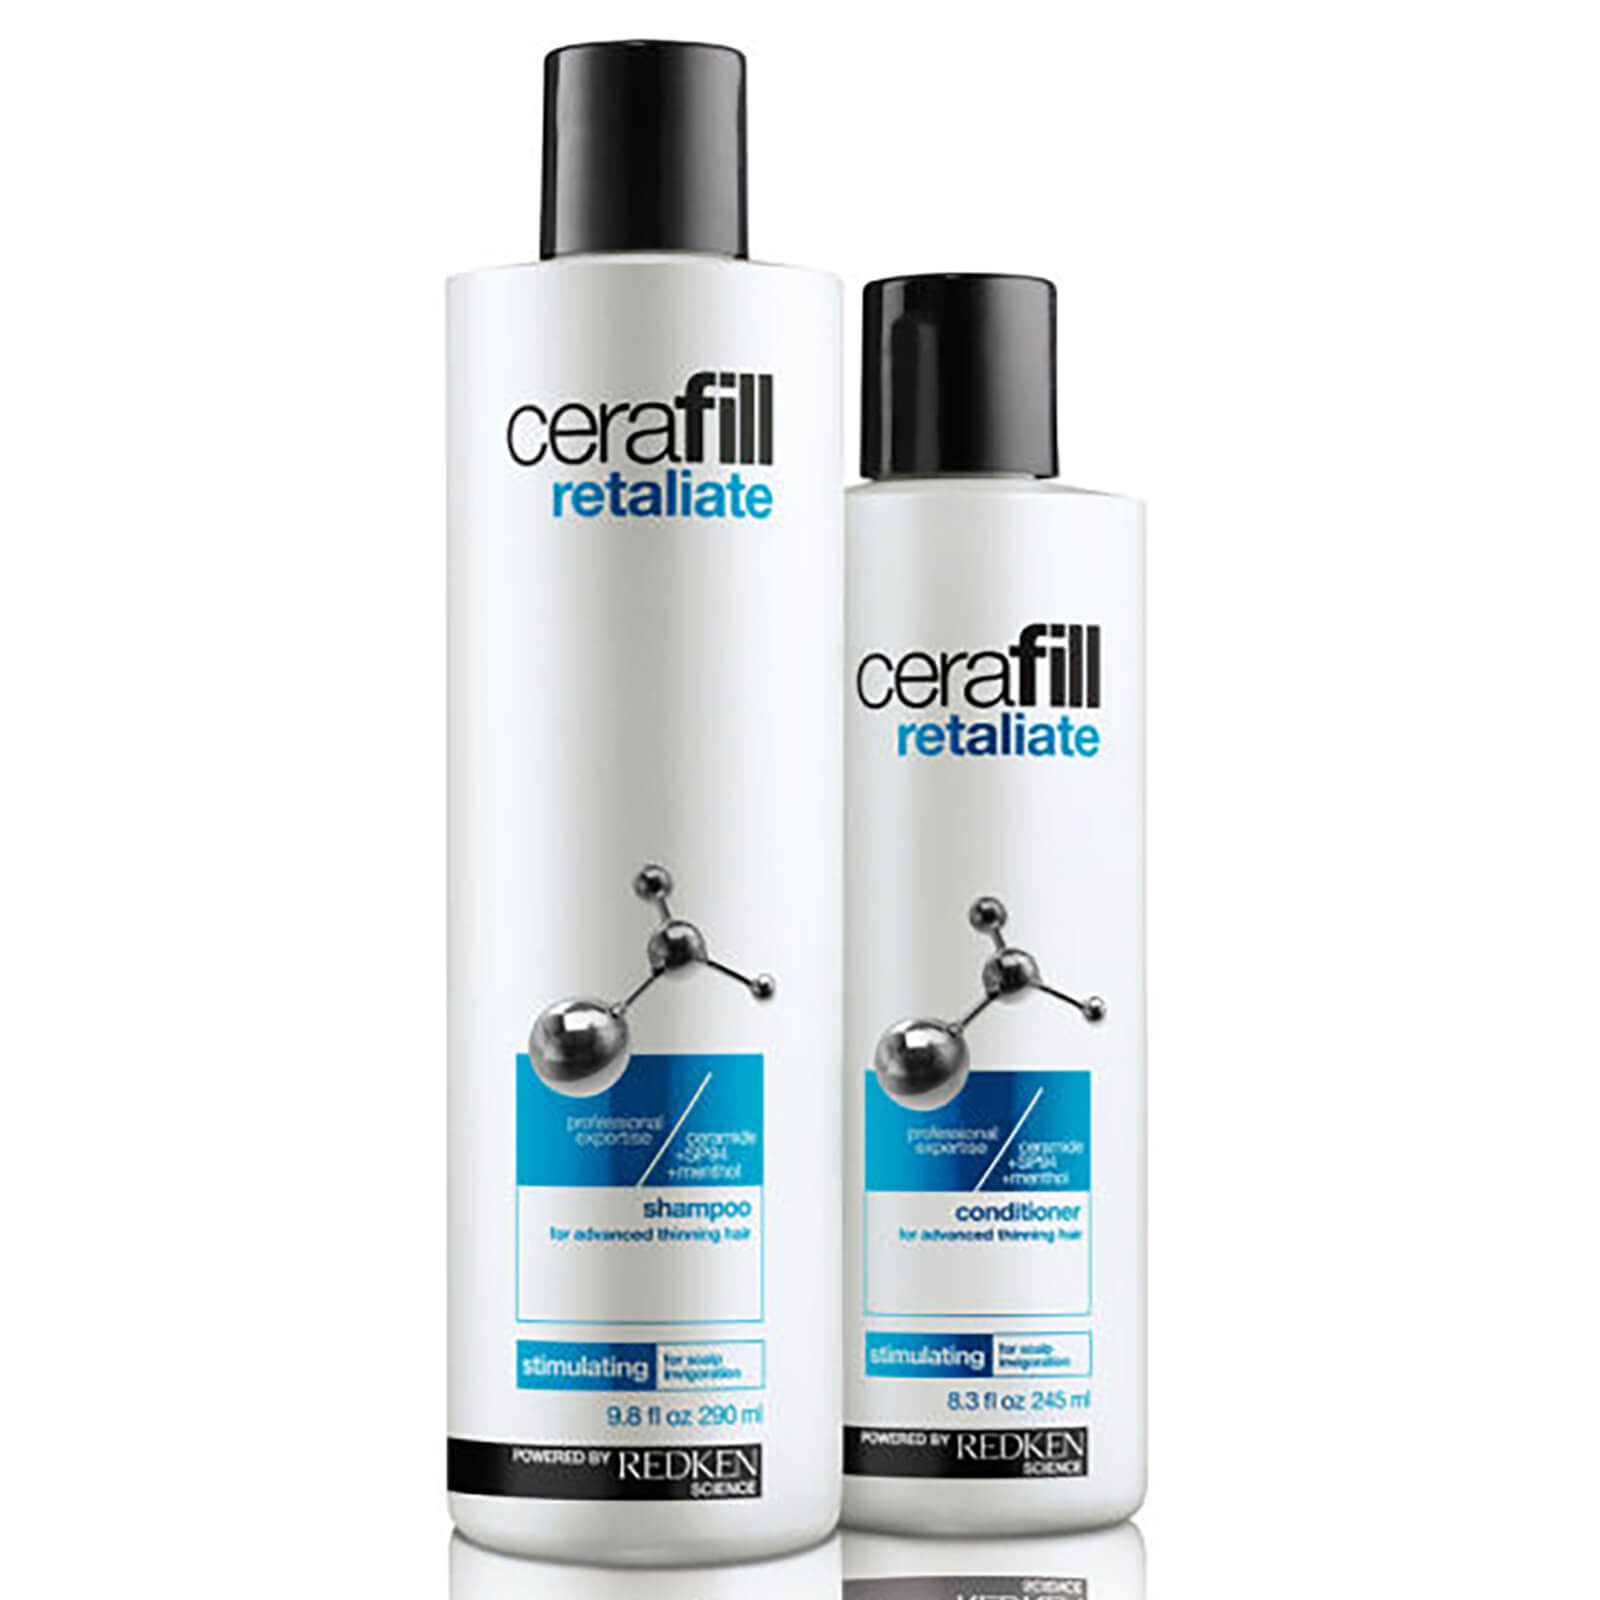 Redken Cerafill Retaliate Shampoo 290ml Conditioner 245ml Bundle Lookfantastic